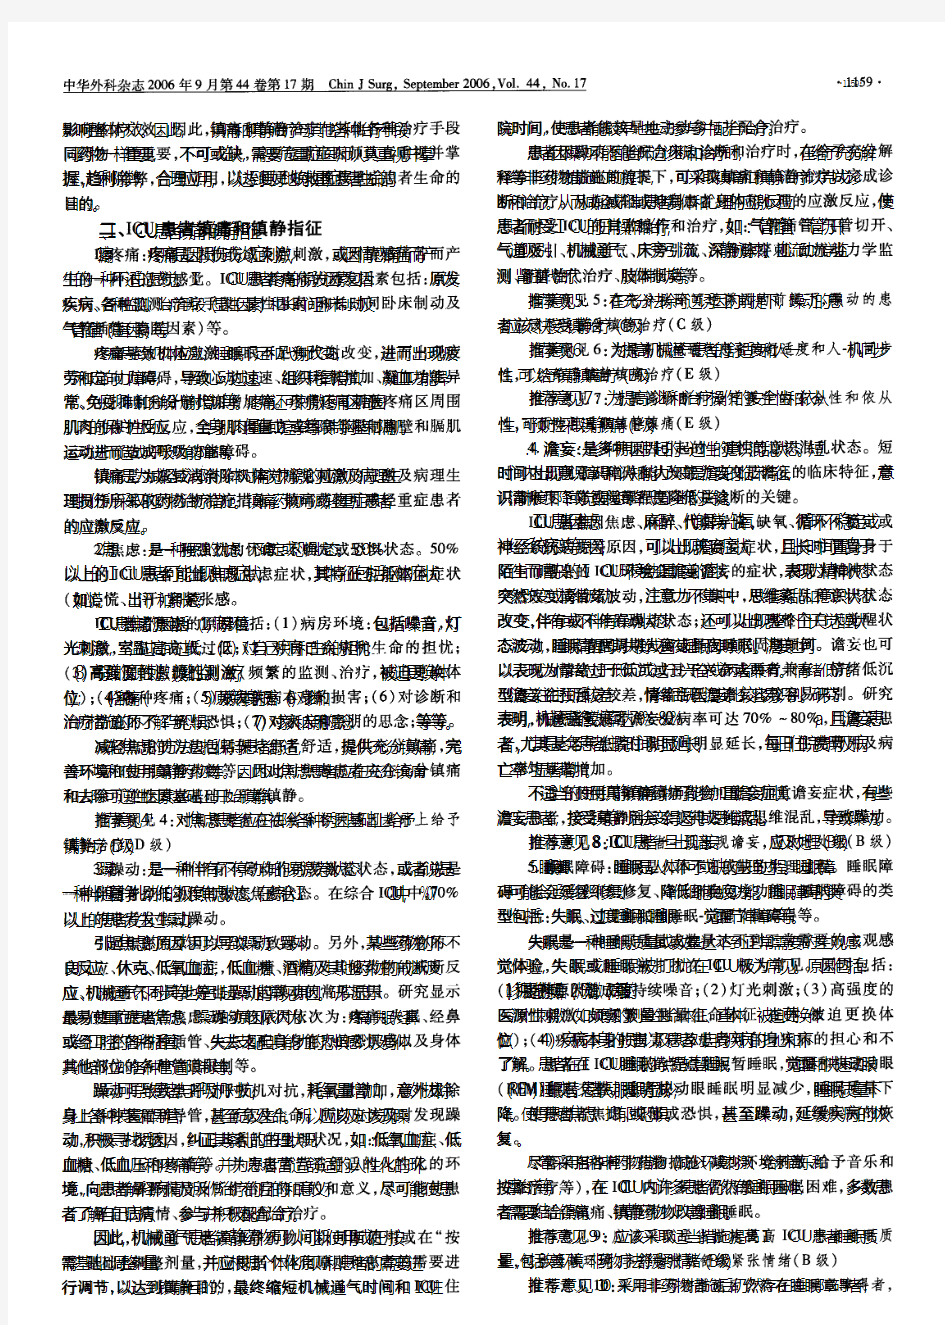 中国重症加强治疗病房患者镇痛和镇静治疗指导意见(2006)